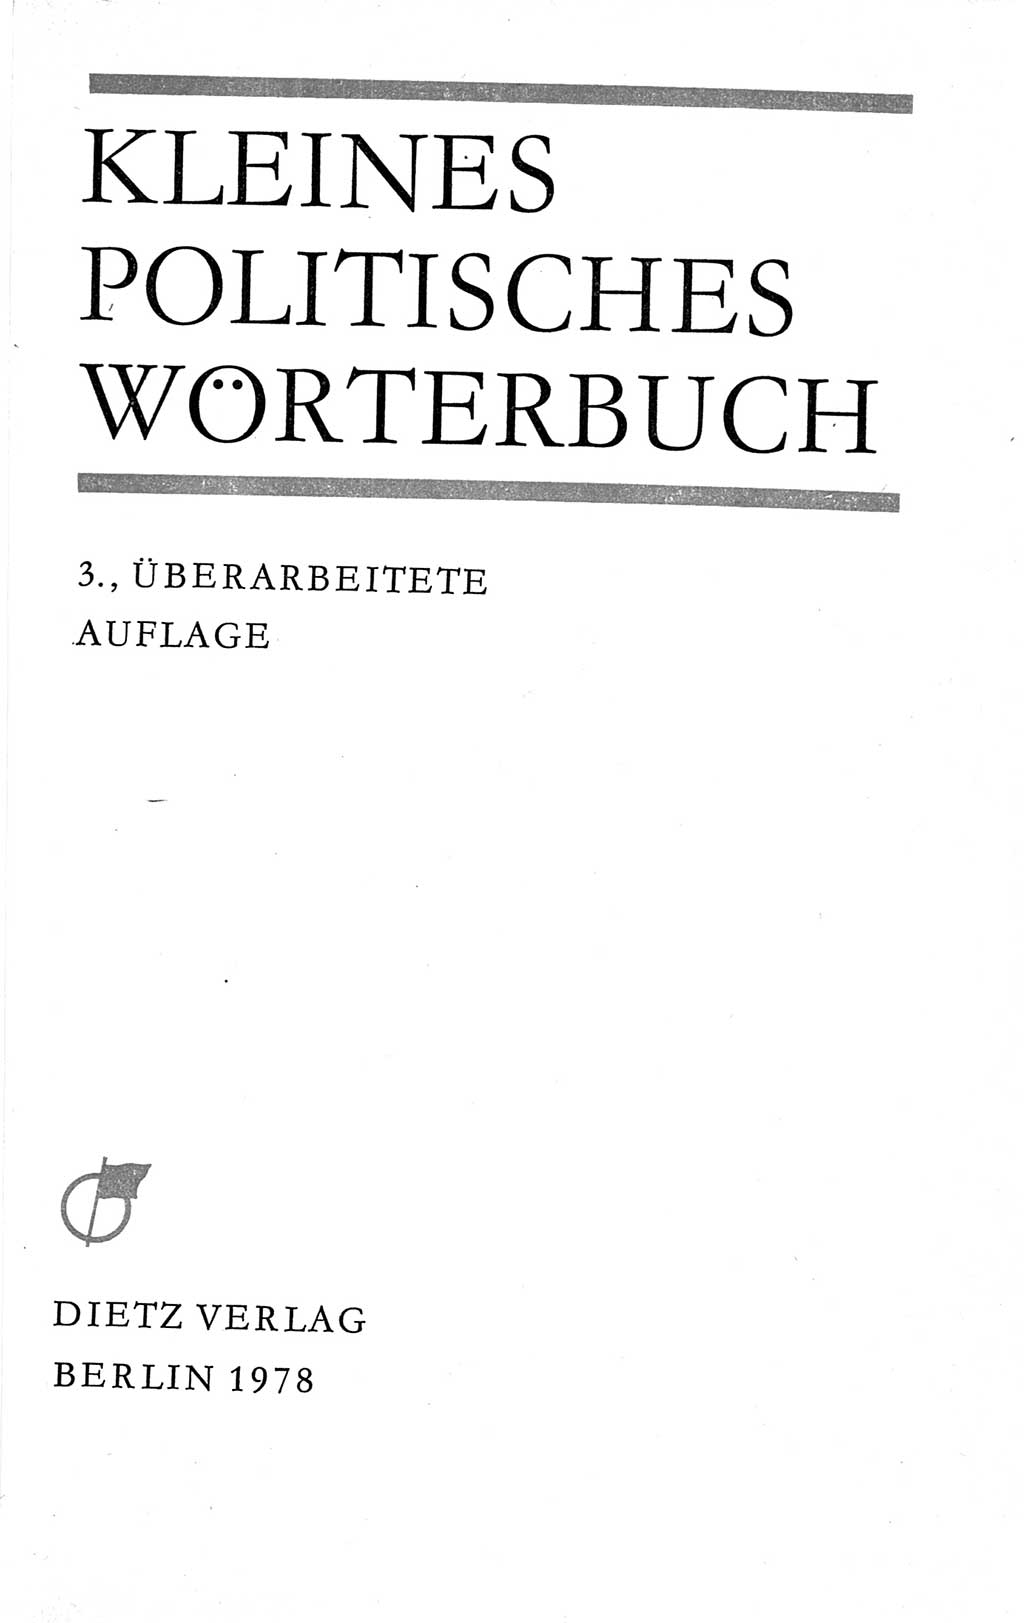 Kleines politisches Wörterbuch [Deutsche Demokratische Republik (DDR)] 1978, Seite 3 (Kl. pol. Wb. DDR 1978, S. 3)